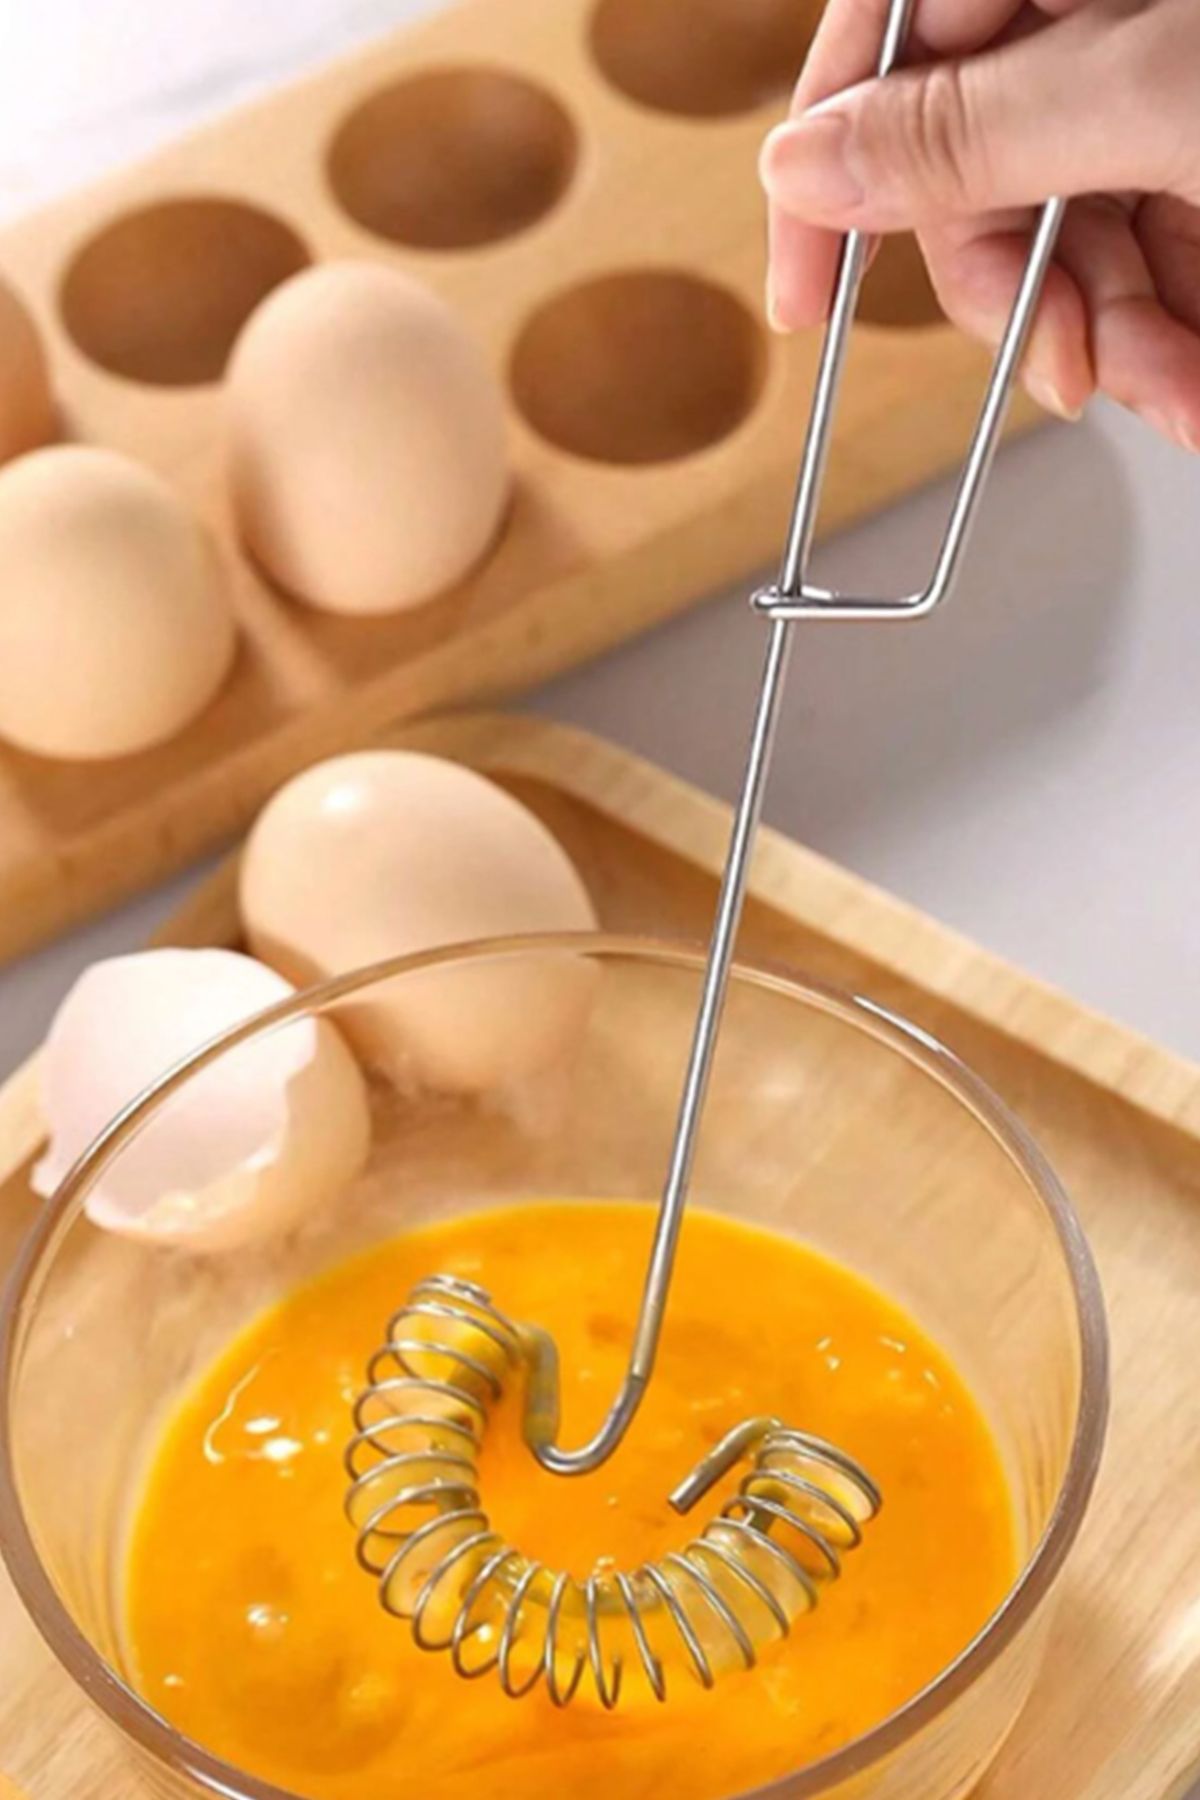 Factorial Paslanmaz Çelik Yumurta Çırpıcı 1 Adet Süt Kahve Köpürtücü Lüx Çırpma Teli Metal Mutfak Aksesuarları